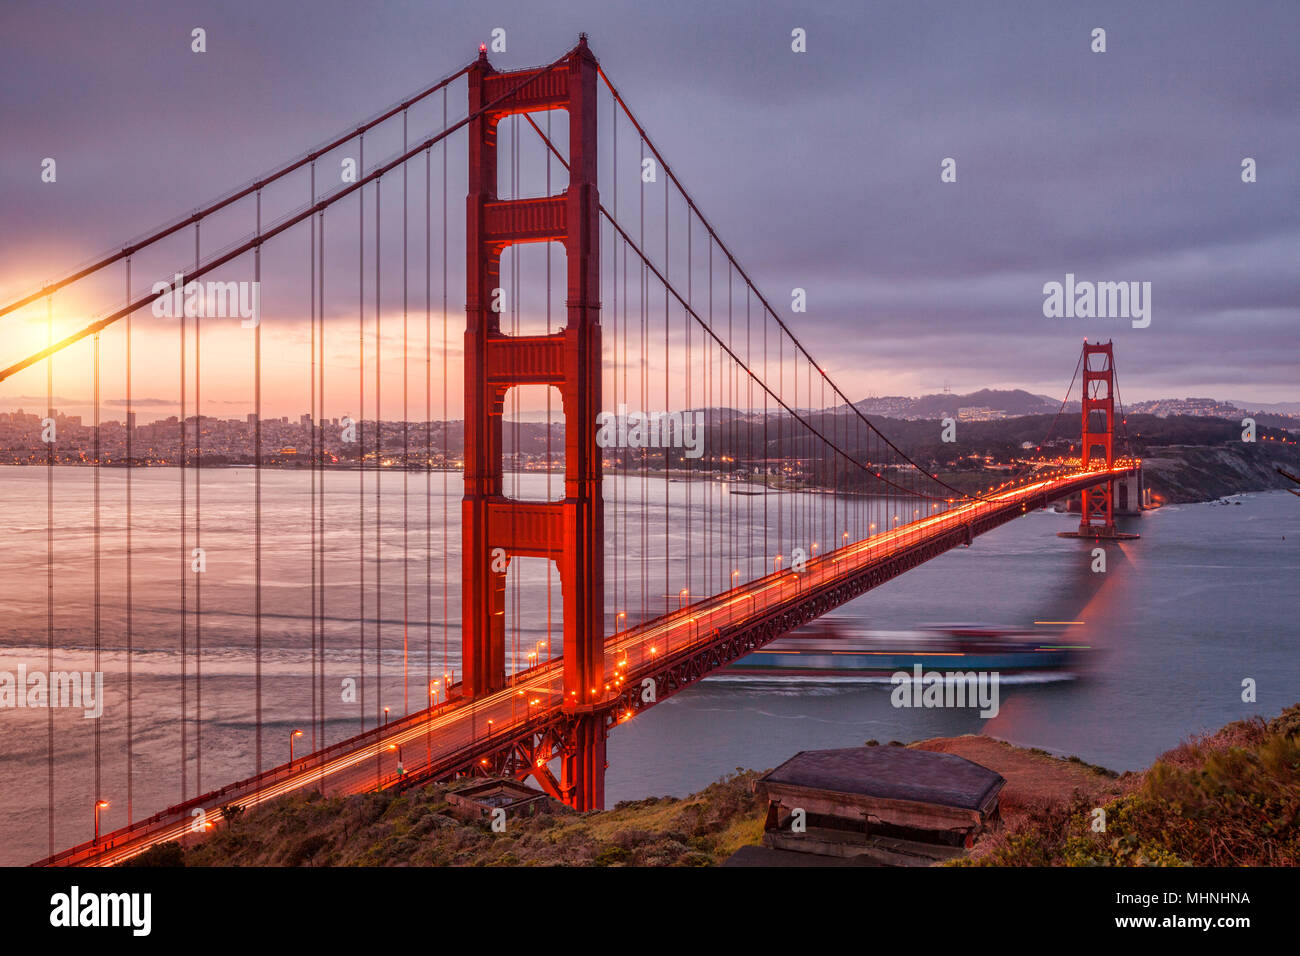 Die Golden Gate Bridge, San Francisco, von der Batterie Spencer in der Dämmerung, mit Verkehr auf der Brücke und einem Container schiff aus dem Schacht heraus. Stockfoto